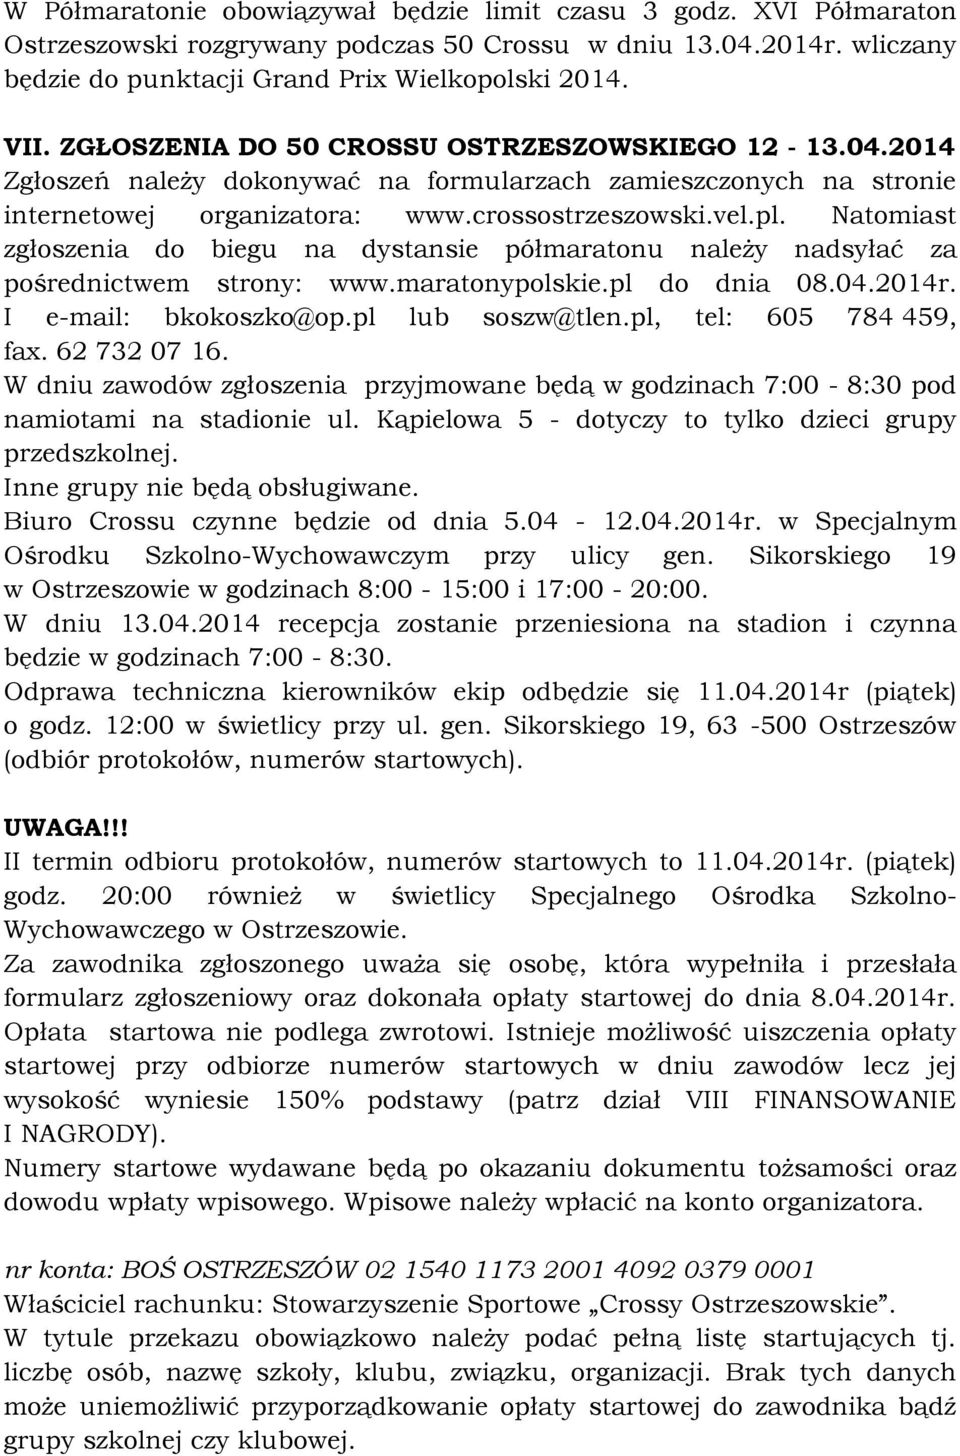 Natomiast zgłoszenia do biegu na dystansie półmaratonu należy nadsyłać za pośrednictwem strony: www.maratonypolskie.pl do dnia 08.04.2014r. I e-mail: bkokoszko@op.pl lub soszw@tlen.